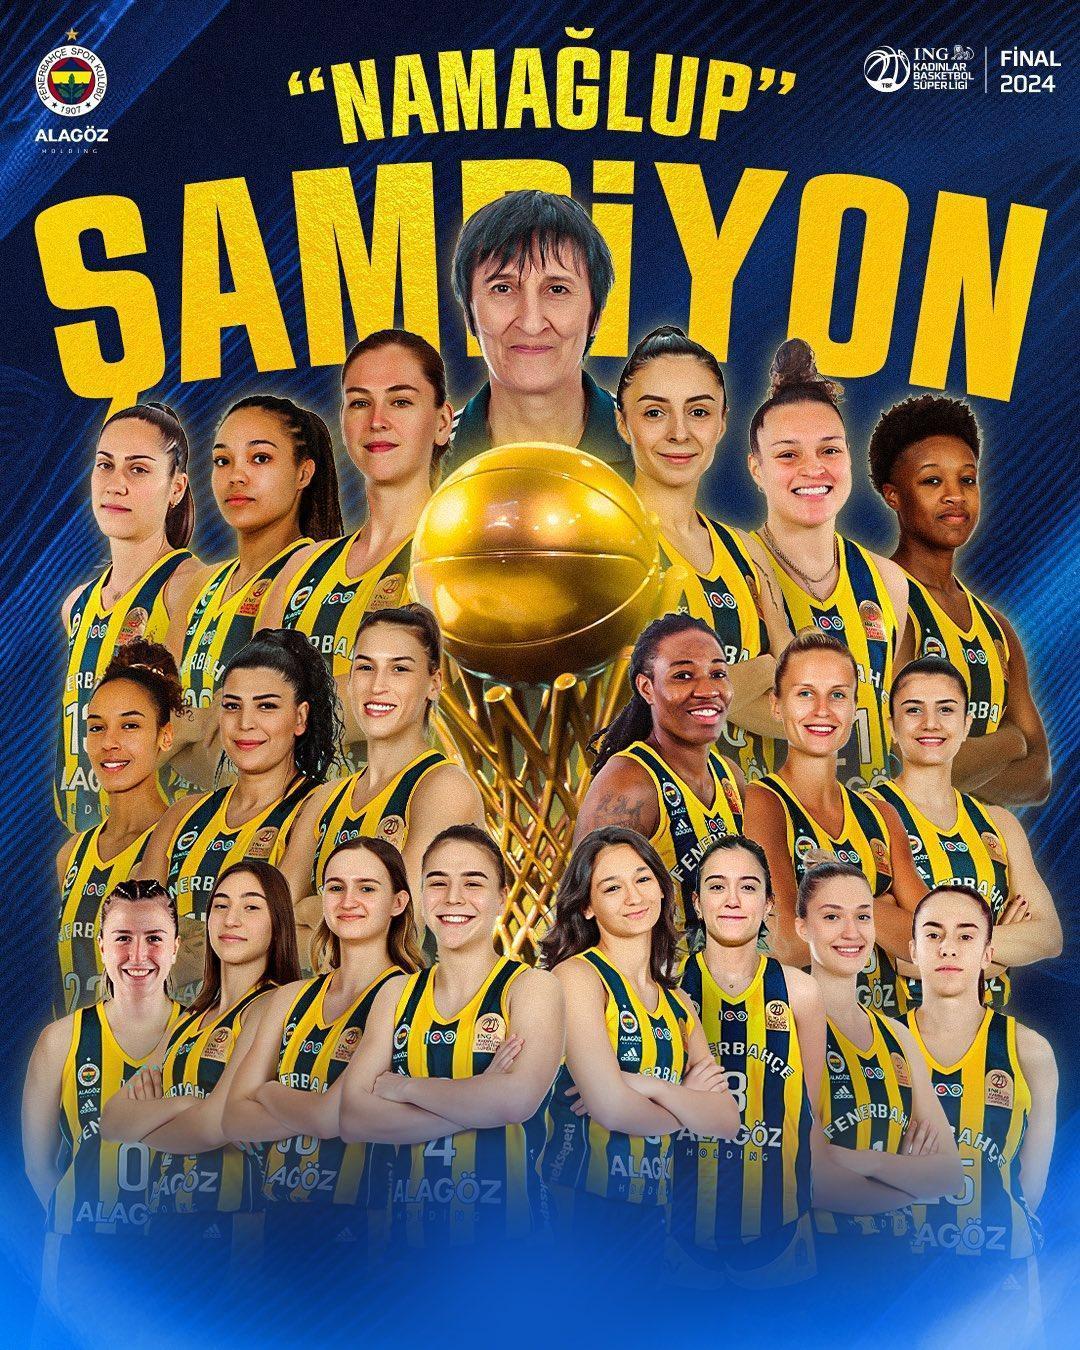 kadınlar basketbol süper ligi'nde şampiyon fenerbahçe! ligde namağlup, 4 kupalı şampiyon...